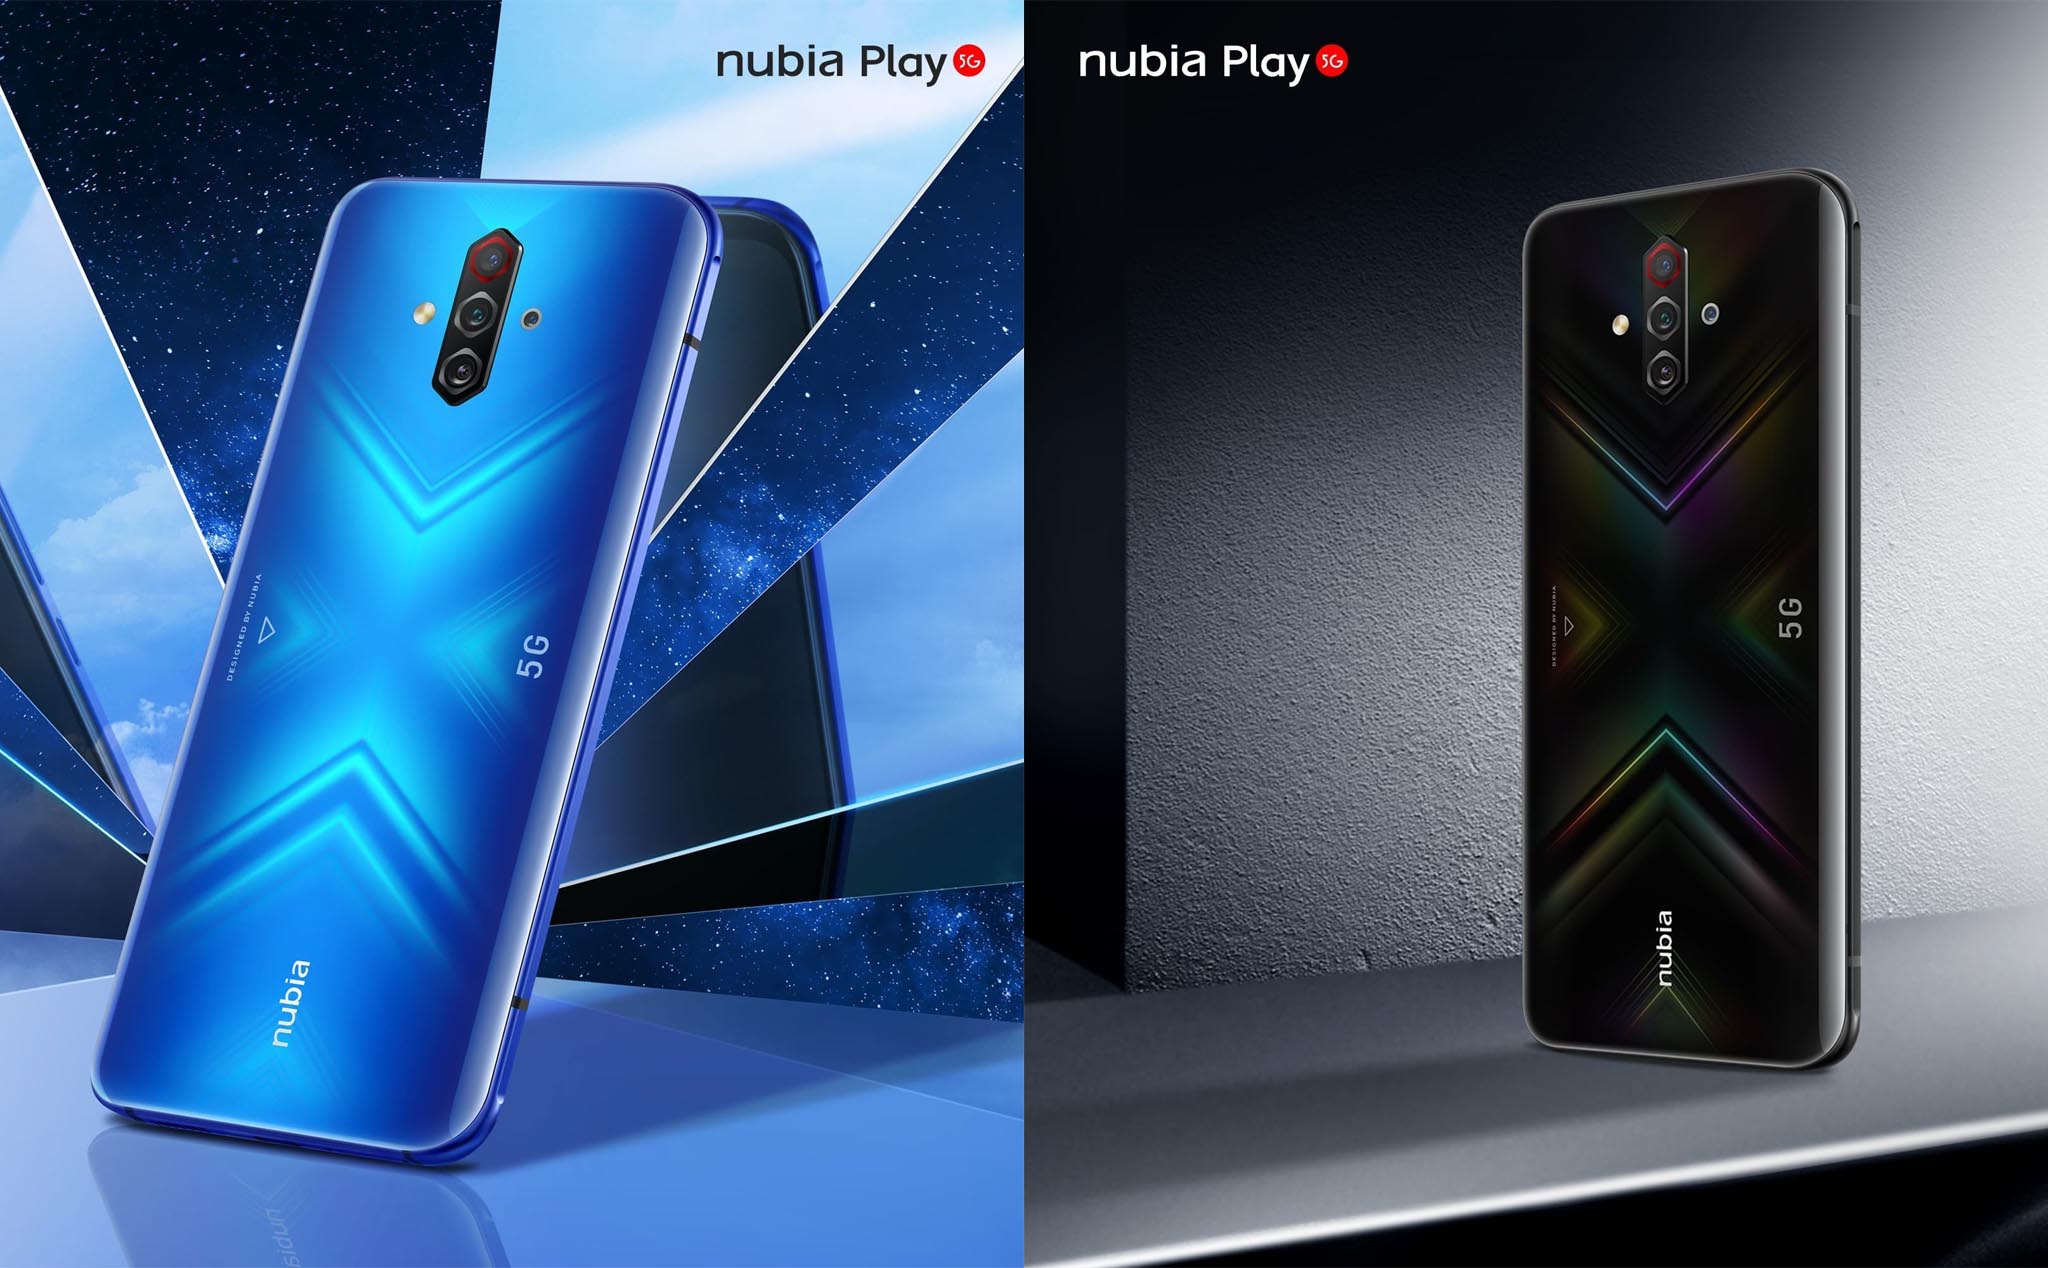 Nubia Play: Smartphone gaming giá dưới 350 USD nhưng vẫn đủ 5G, màn 144Hz và pin 5100mAh